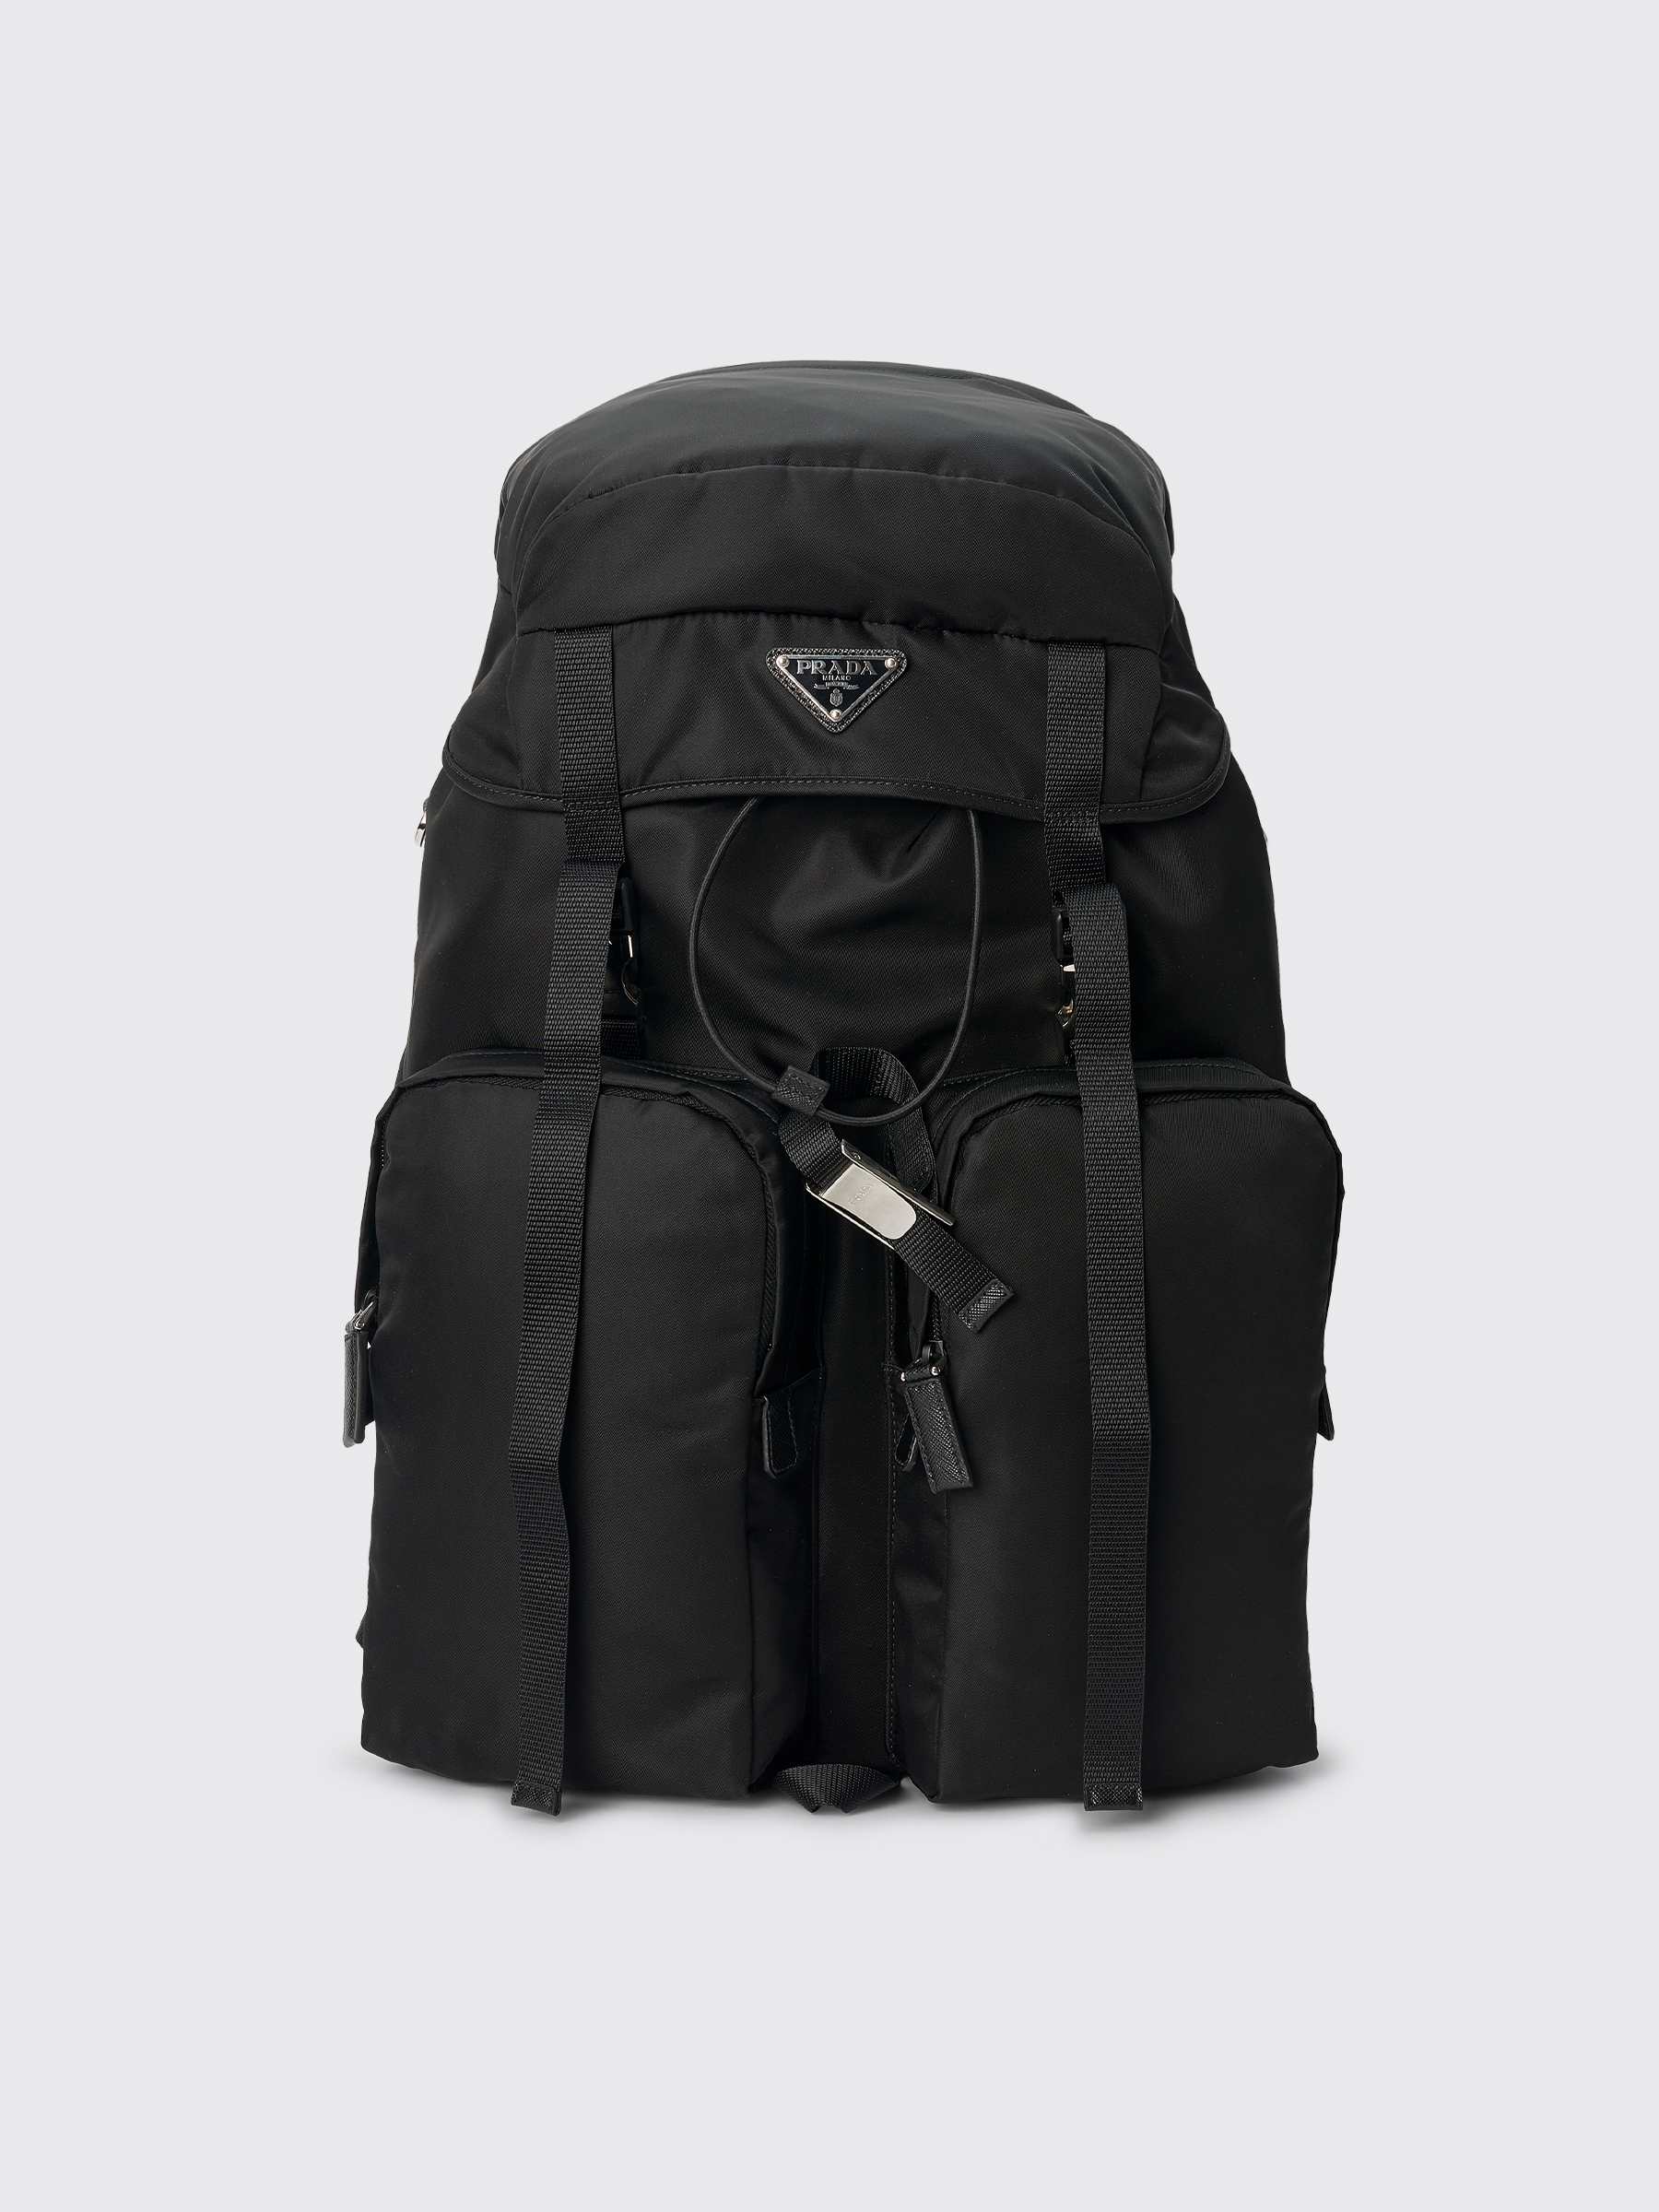 prada black leather backpack